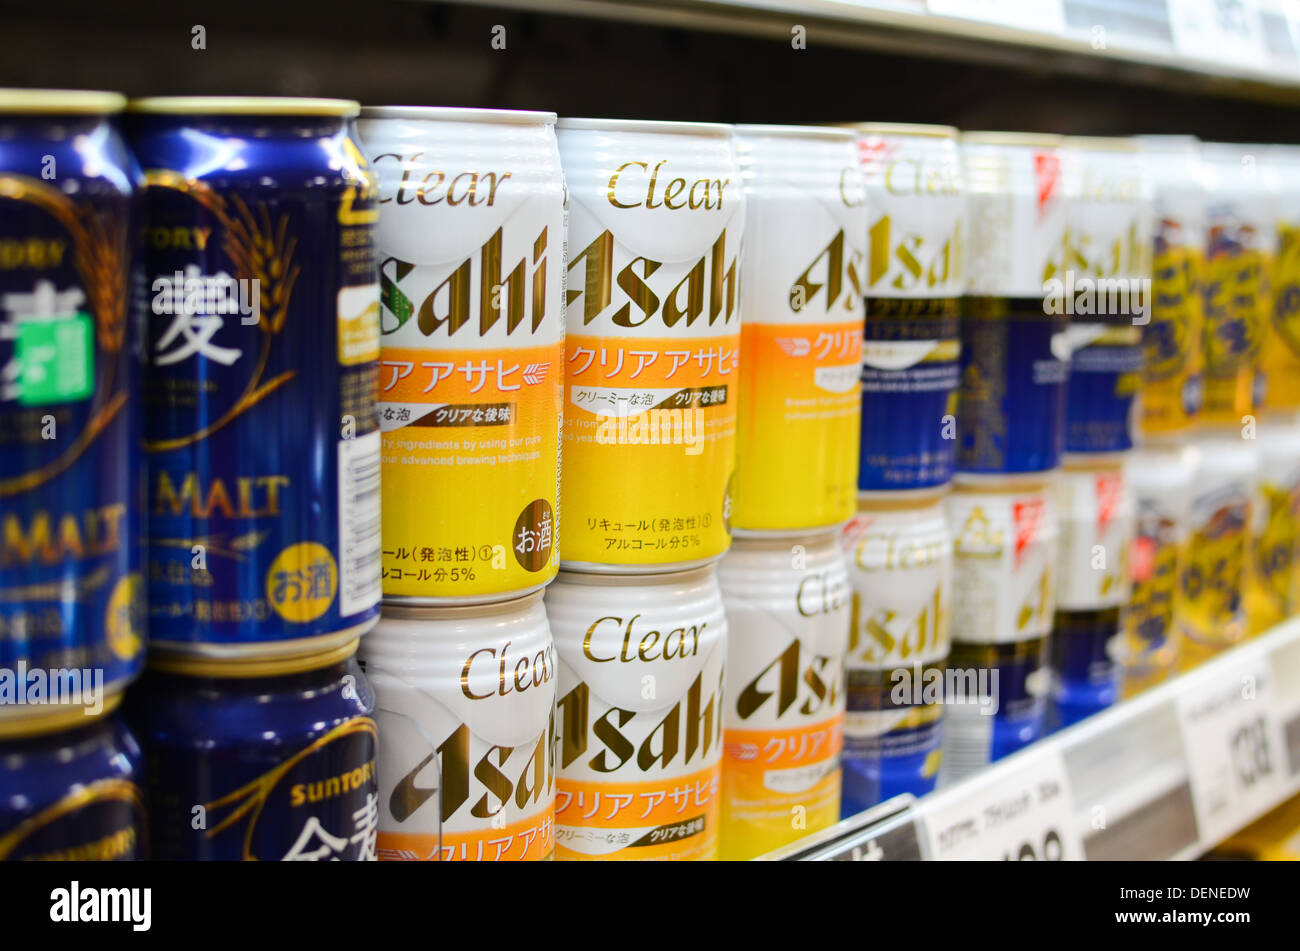 Japanische Bier-ähnliche Getränke zum Verkauf in einem Supermarkt in Japan. Stockfoto